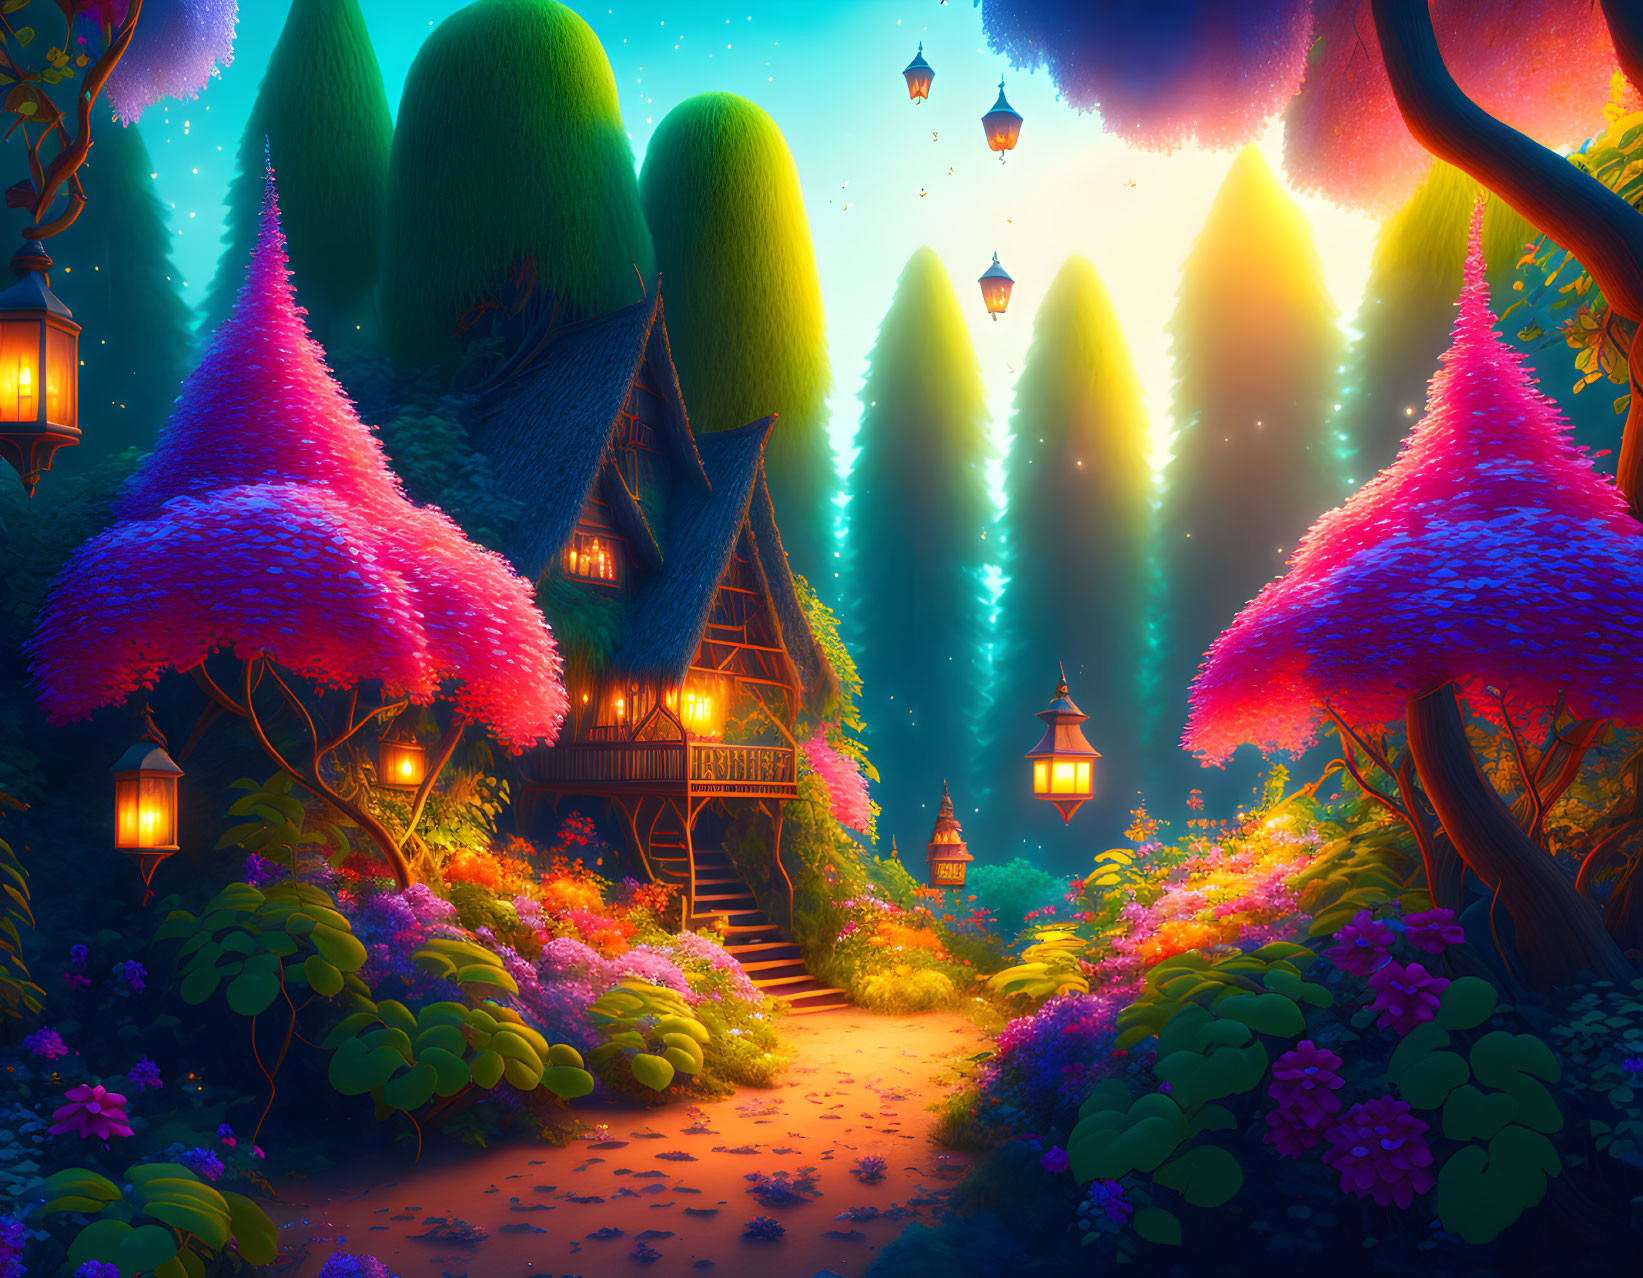 Fantasy landscape at dusk: illuminated cottage, colorful trees, floating lanterns.